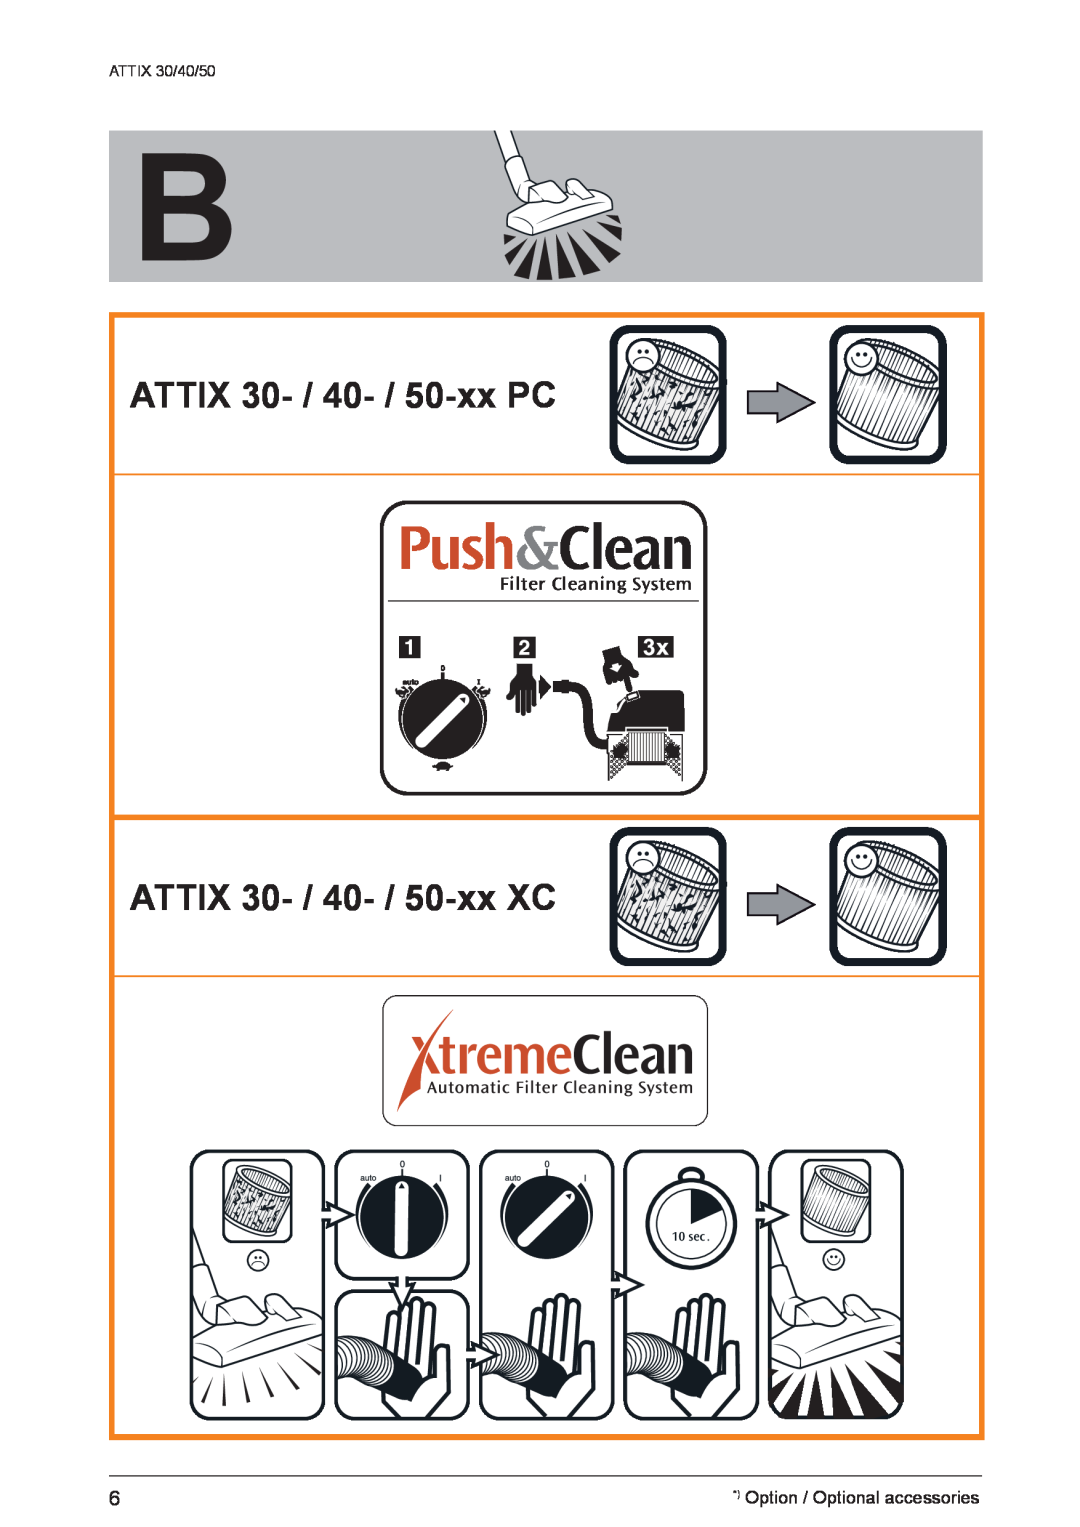 Nilfisk-ALTO 50/PC/XC ATTIX 30- / 40- / 50-xxPC, ATTIX 30- / 40- / 50-xxXC, Filter Cleaning System, ATTIX 30/40/50, 10 sec 